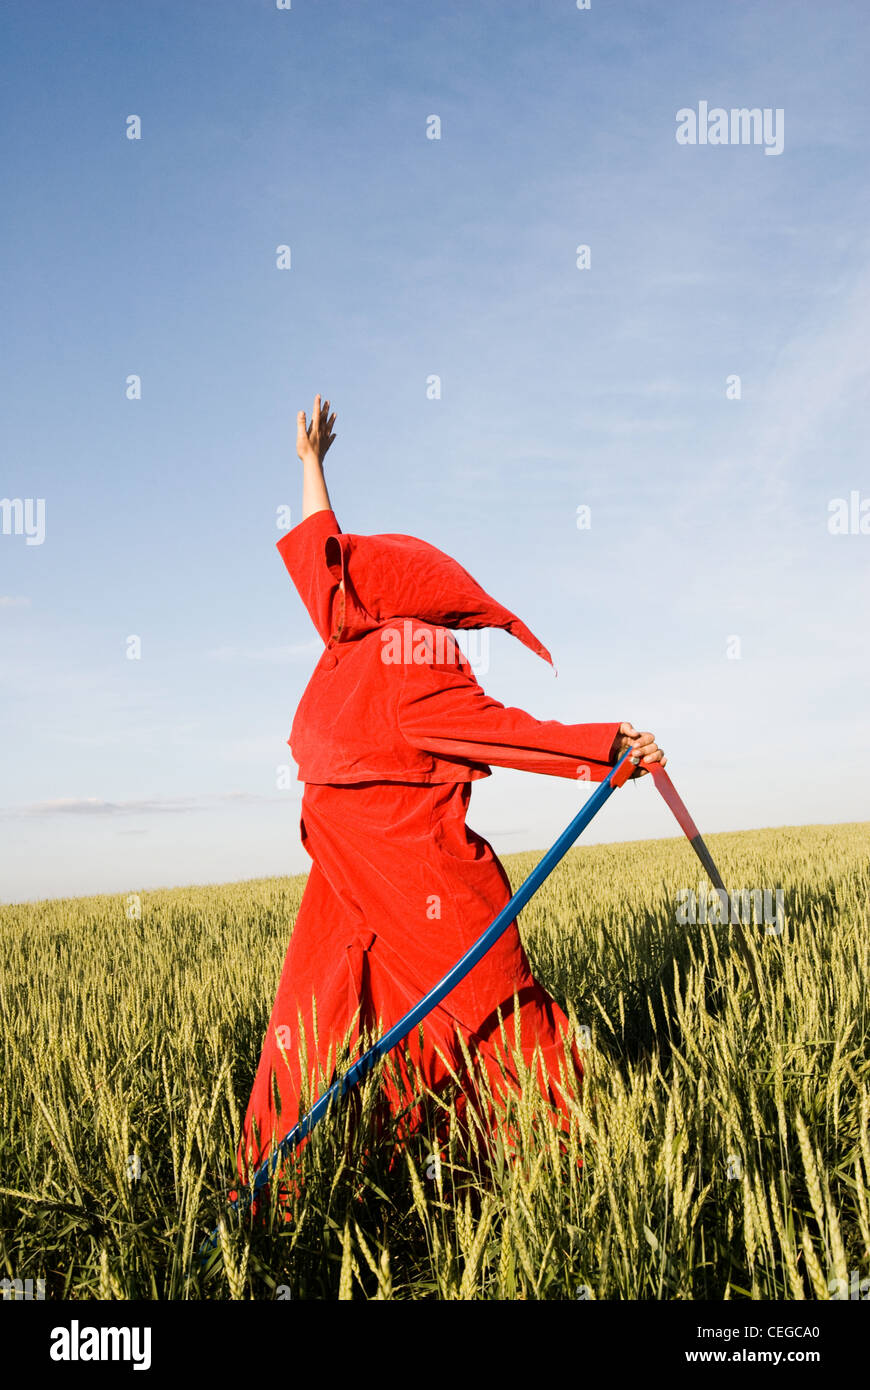 Gespenstische Abbildung in rote Haube mit einer Sense Stockfotografie -  Alamy